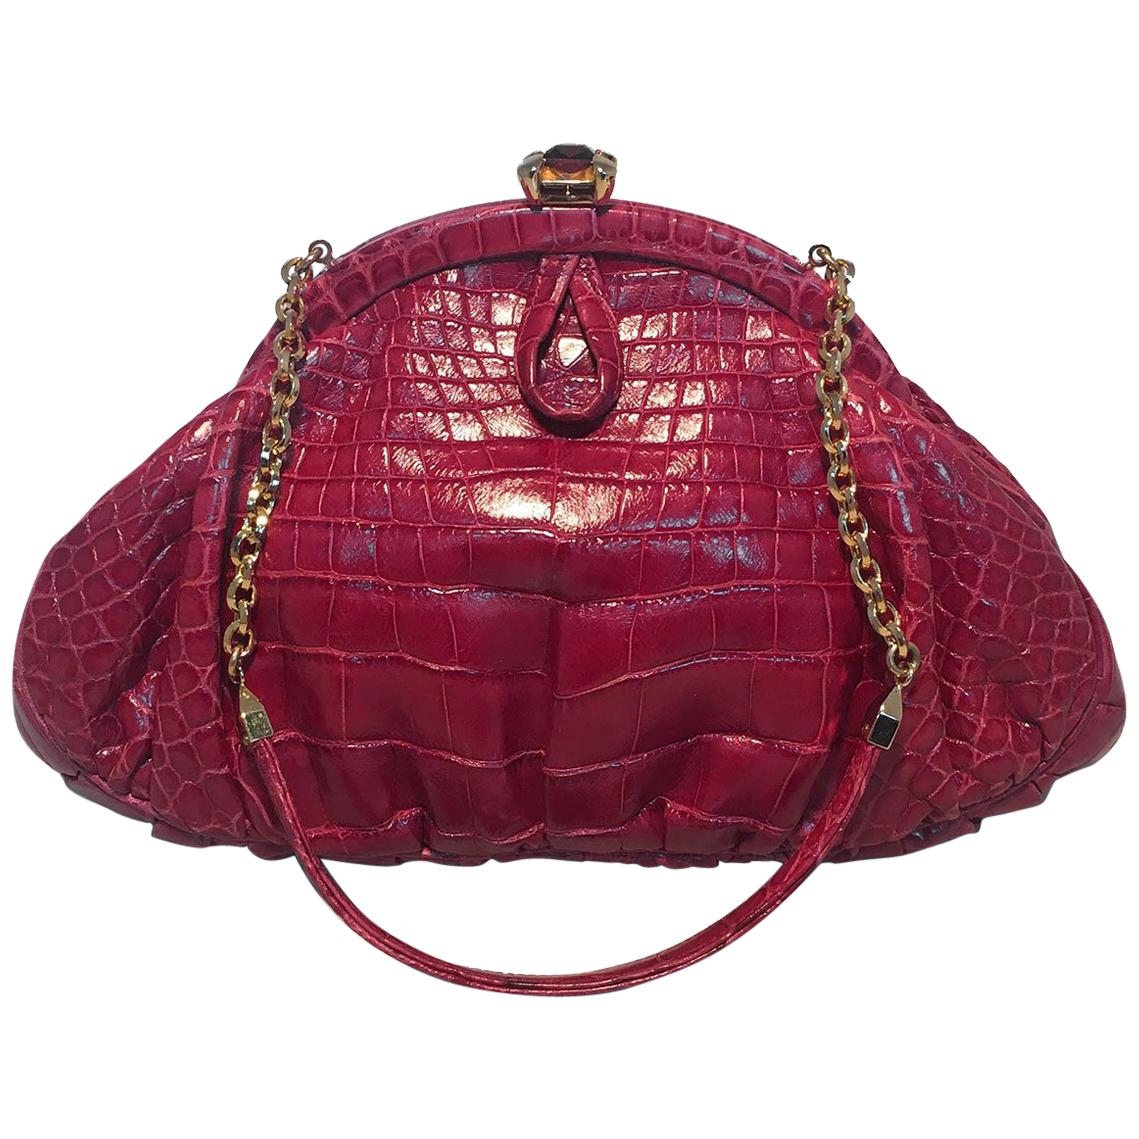 Judith Leiber Small Red Alligator Handbag